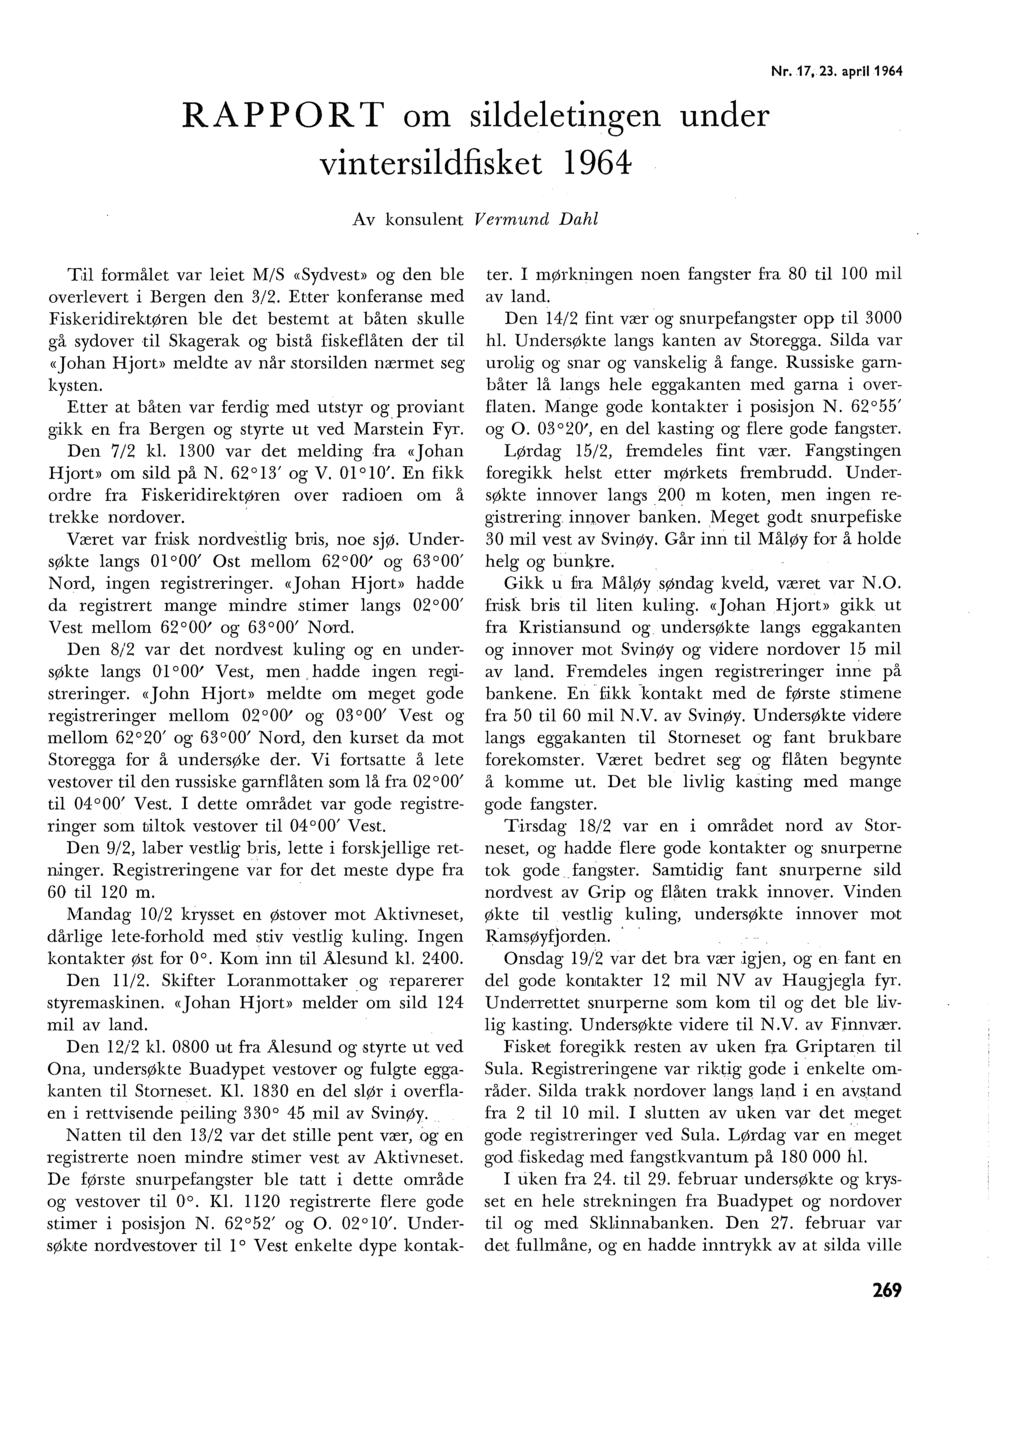 RAPPORT om sideetingen under vintersidfisket 1964 Av konsuent Vermund Dah Nr.. 17,.23. apri1964 ':Gi formået var eiet M/S «Sydvest>> og den be overevert i Bergen den 3/2.